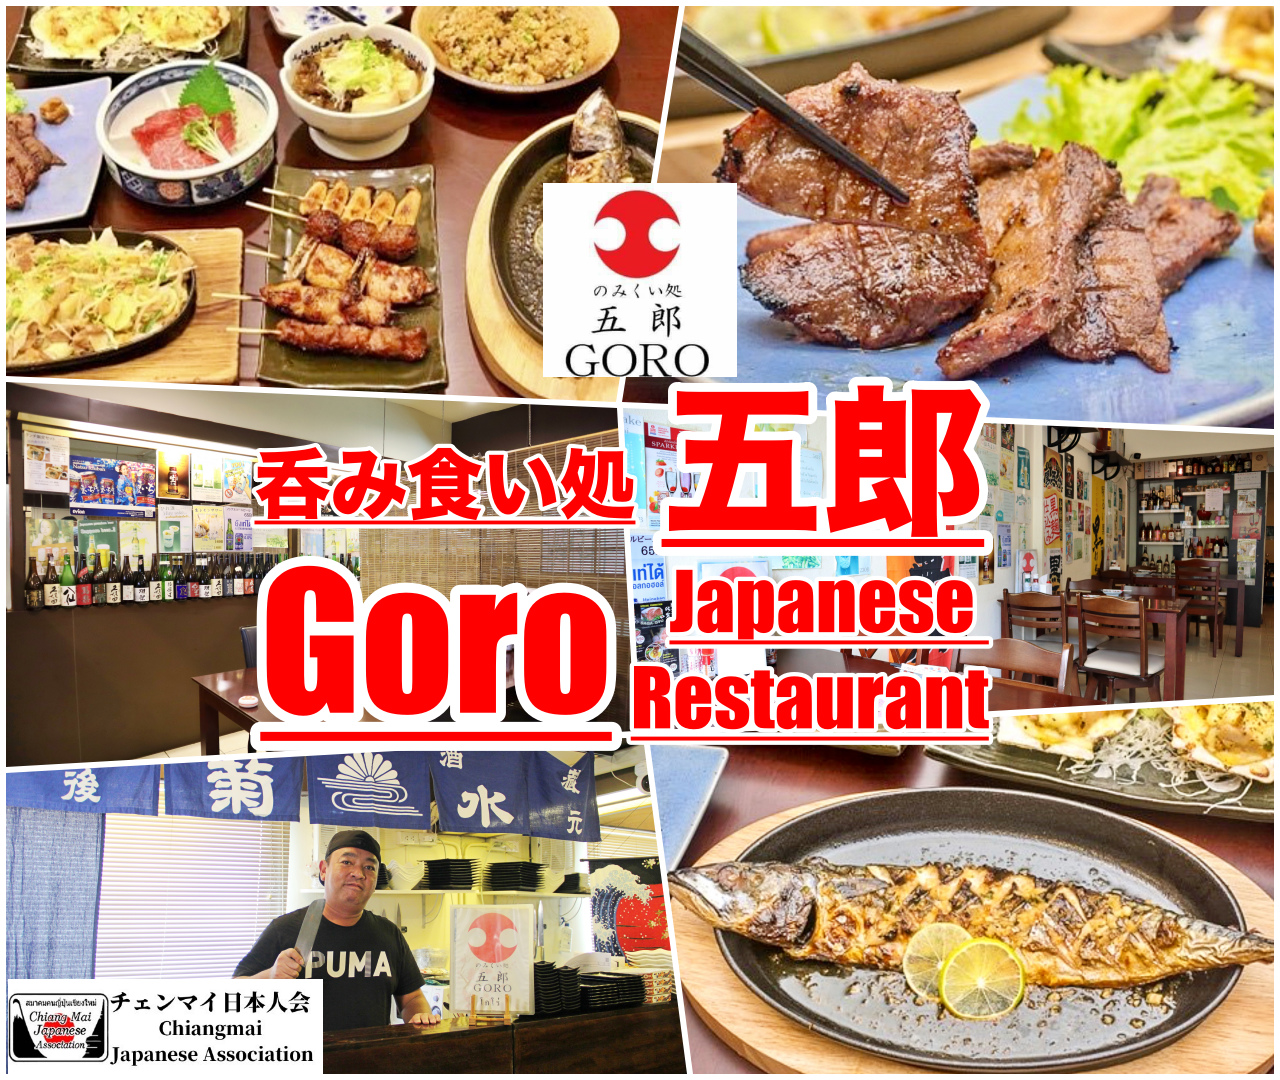 呑み食い処 五郎 (Goro Japanese Restaurant)